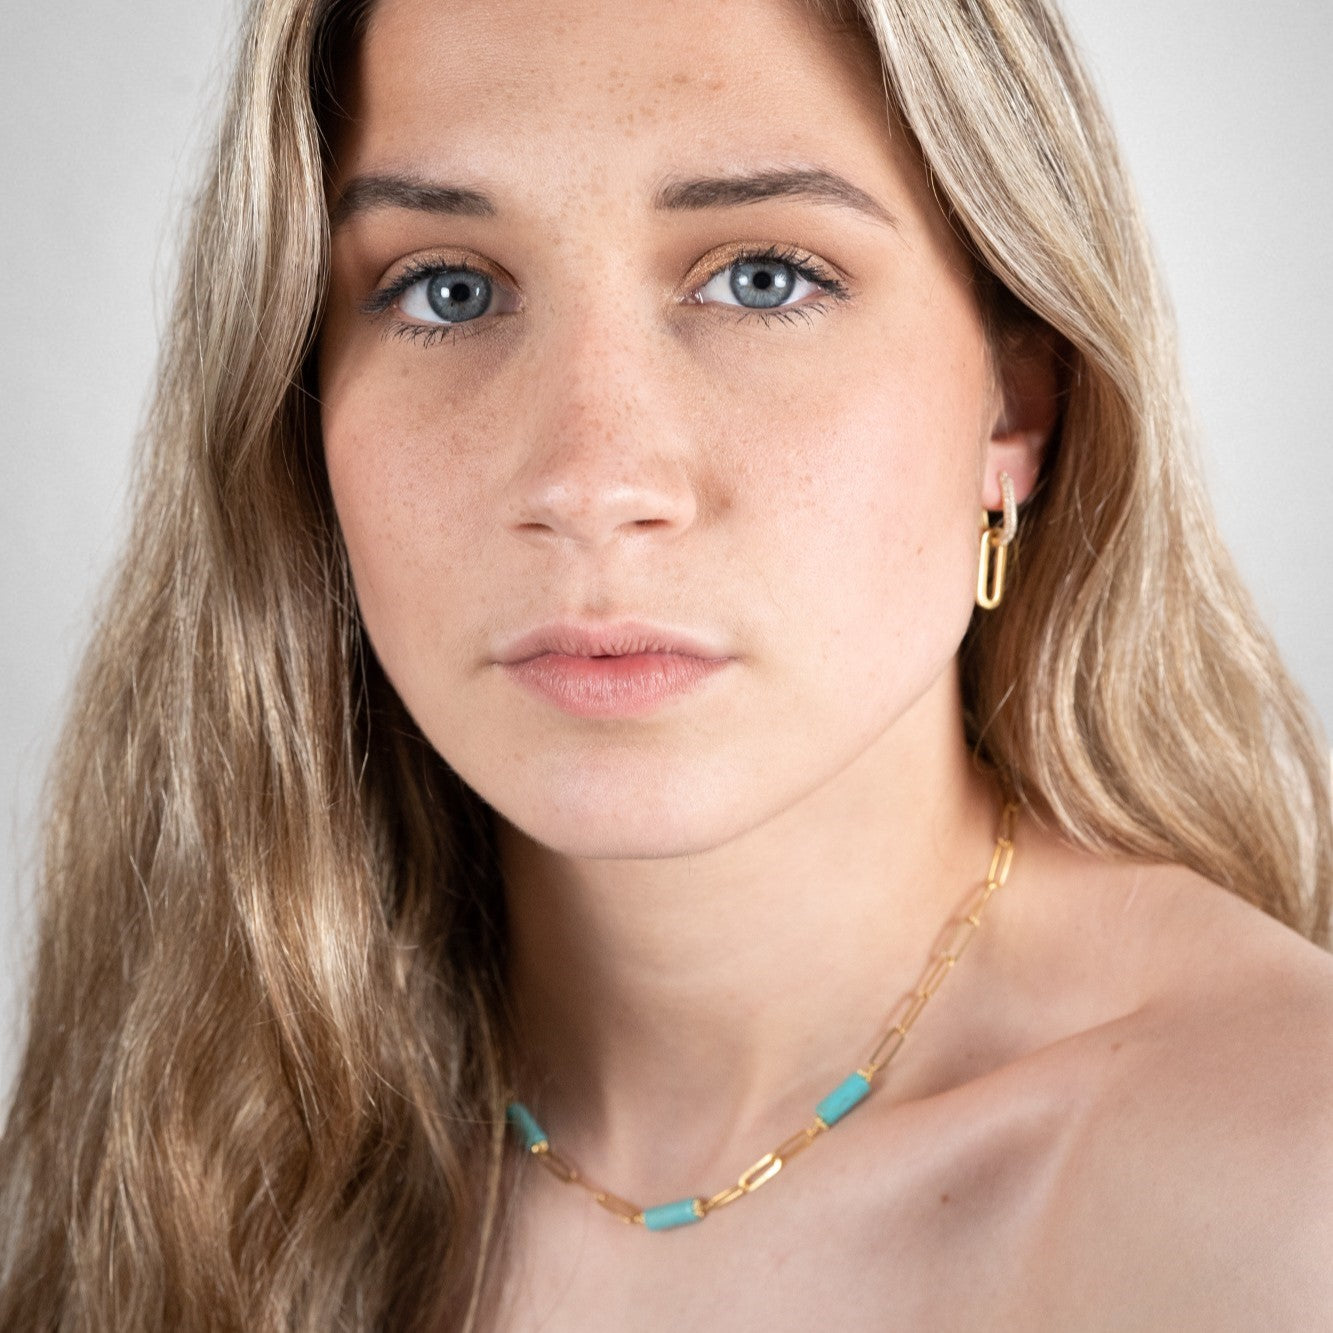 Boucles d'oreilles zirconium modulables portées sur une femme avec un collier turquoise